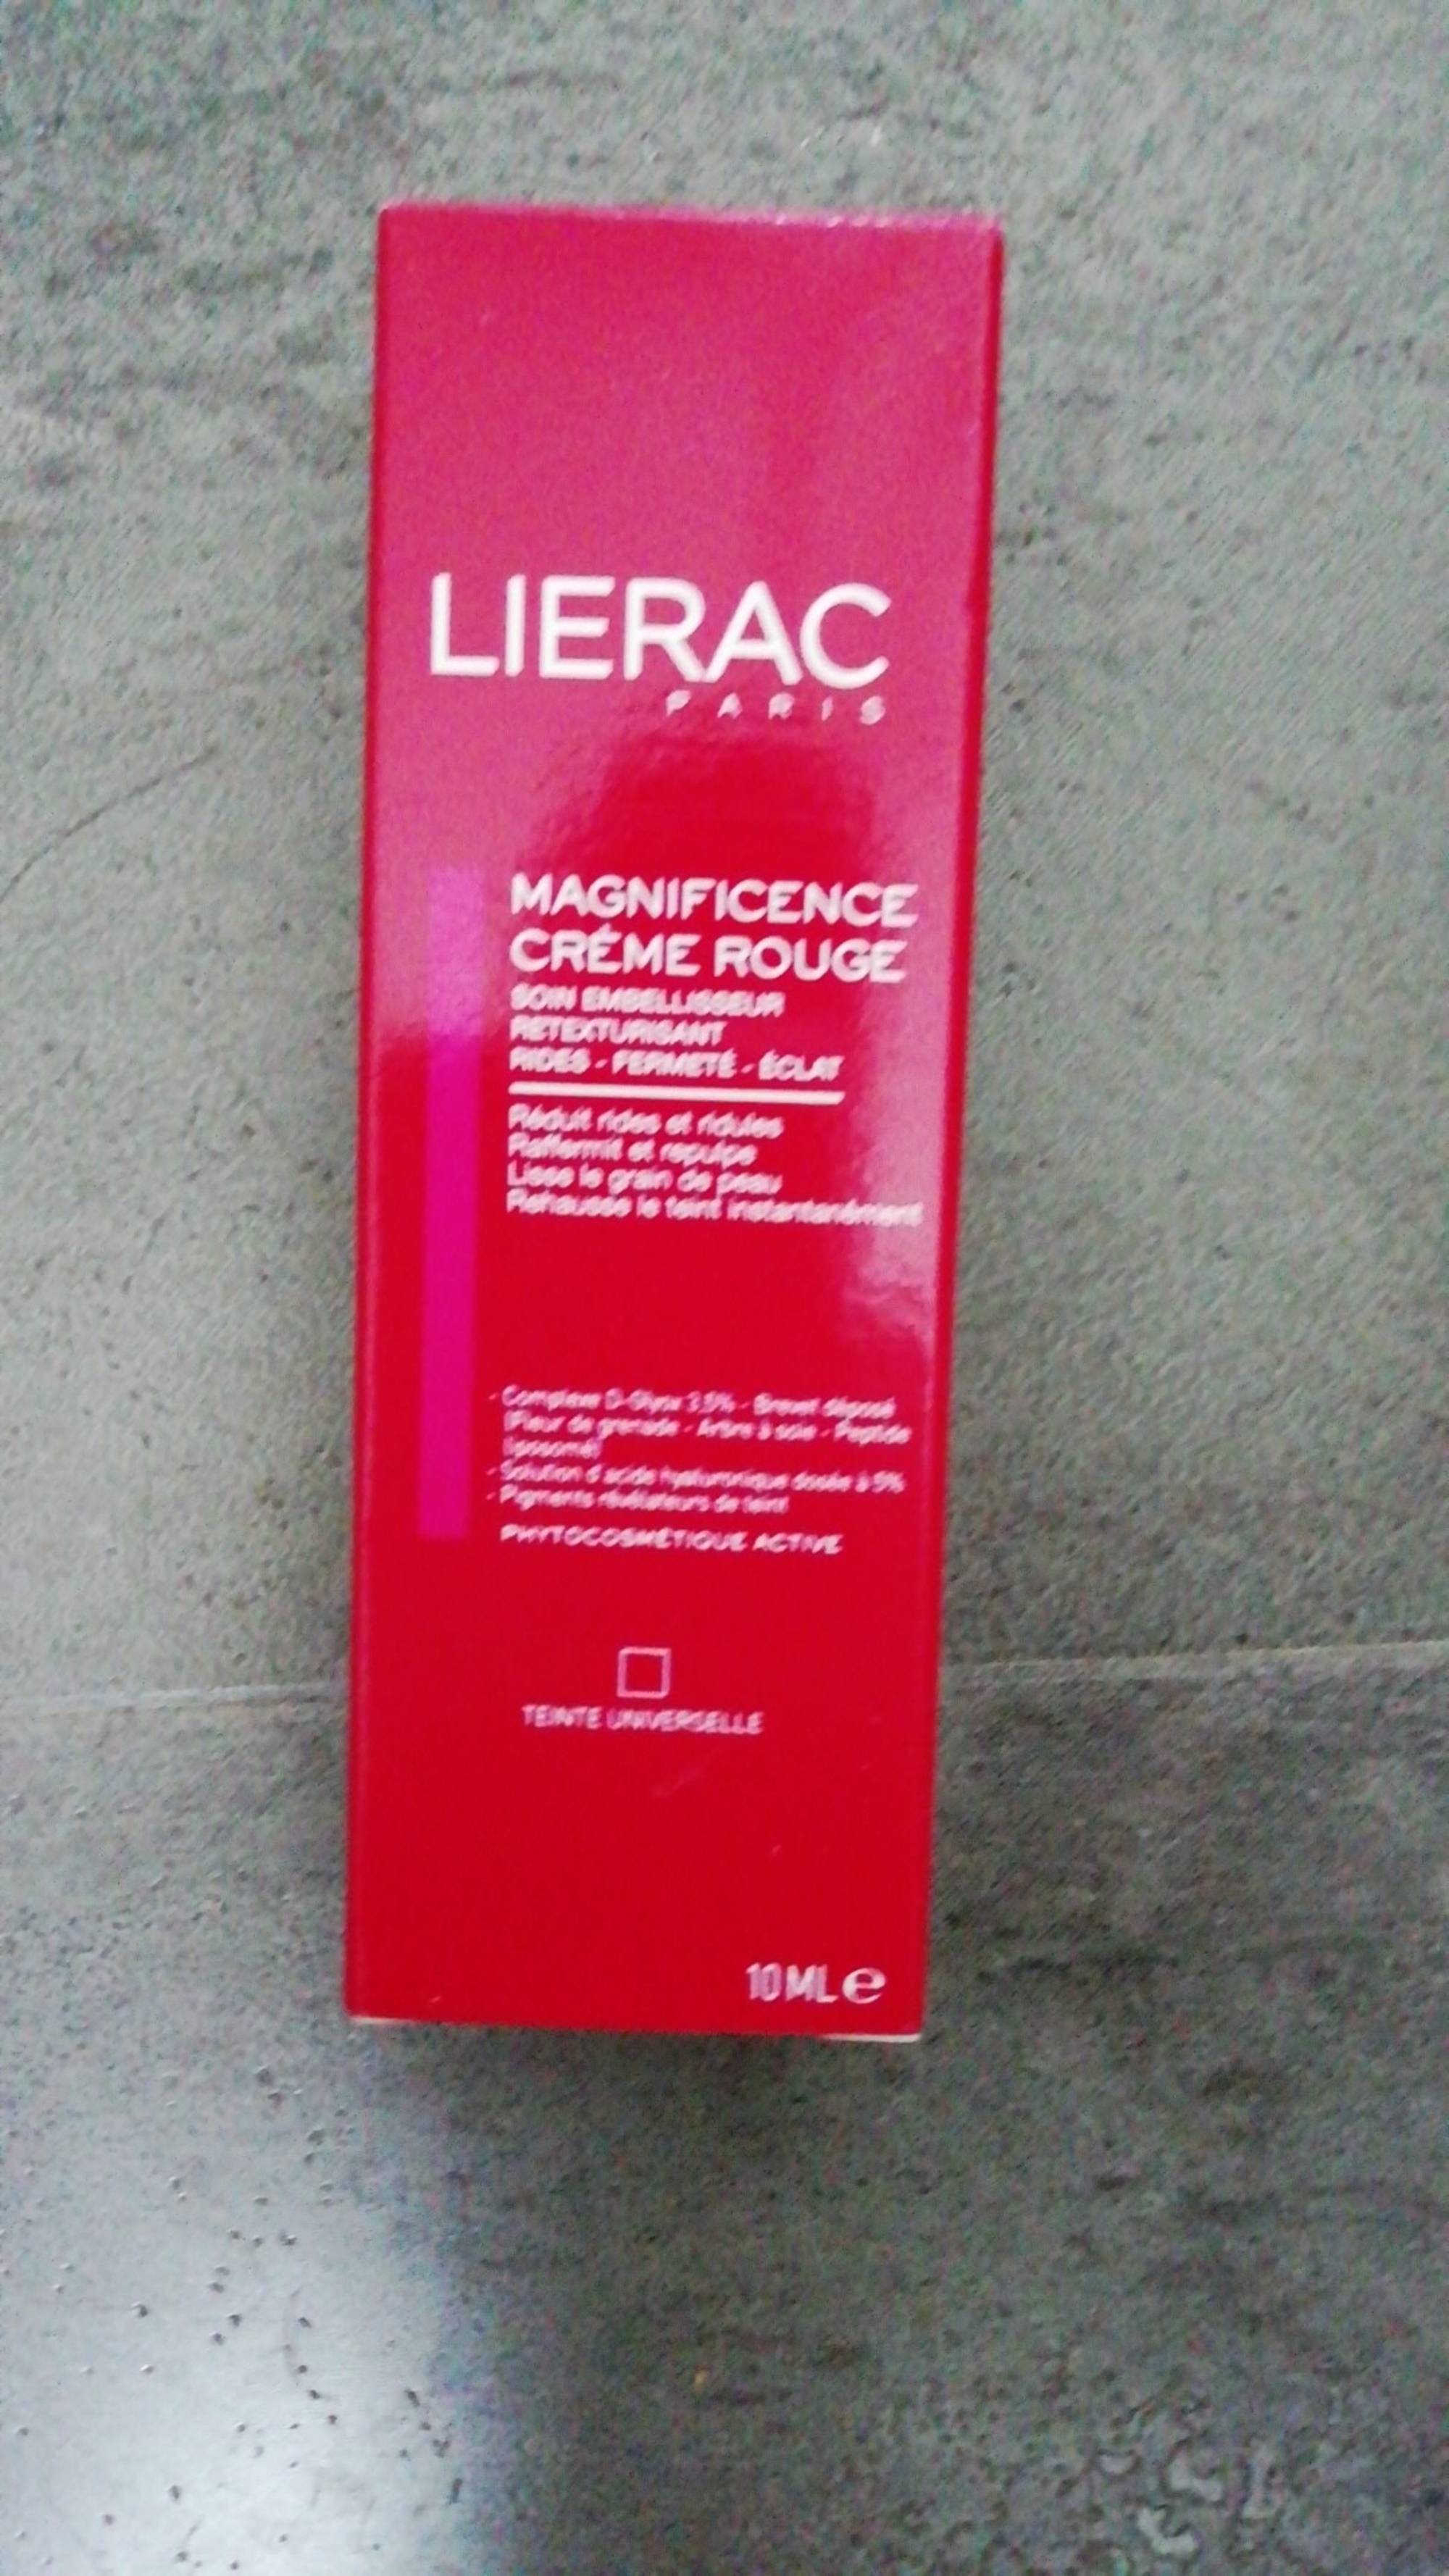 LIÉRAC - Magnificence - Crème rouge